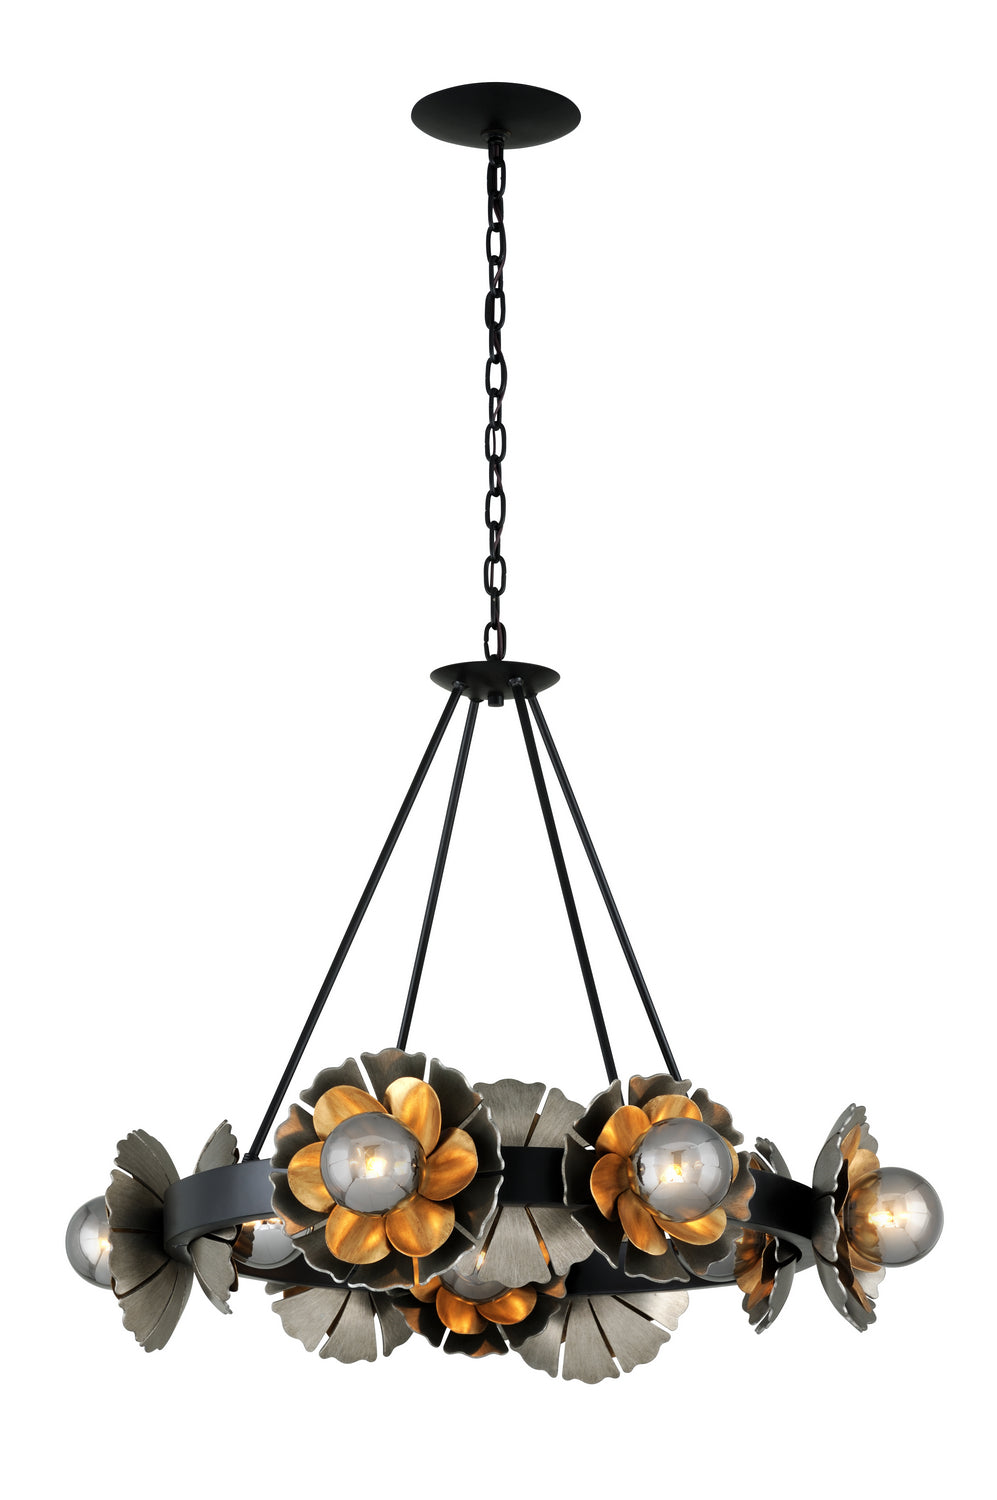 Corbett Lighting - Ten Light Chandelier - Magic Garden - Black Graphite Bronze Leaf- Union Lighting Luminaires Decor